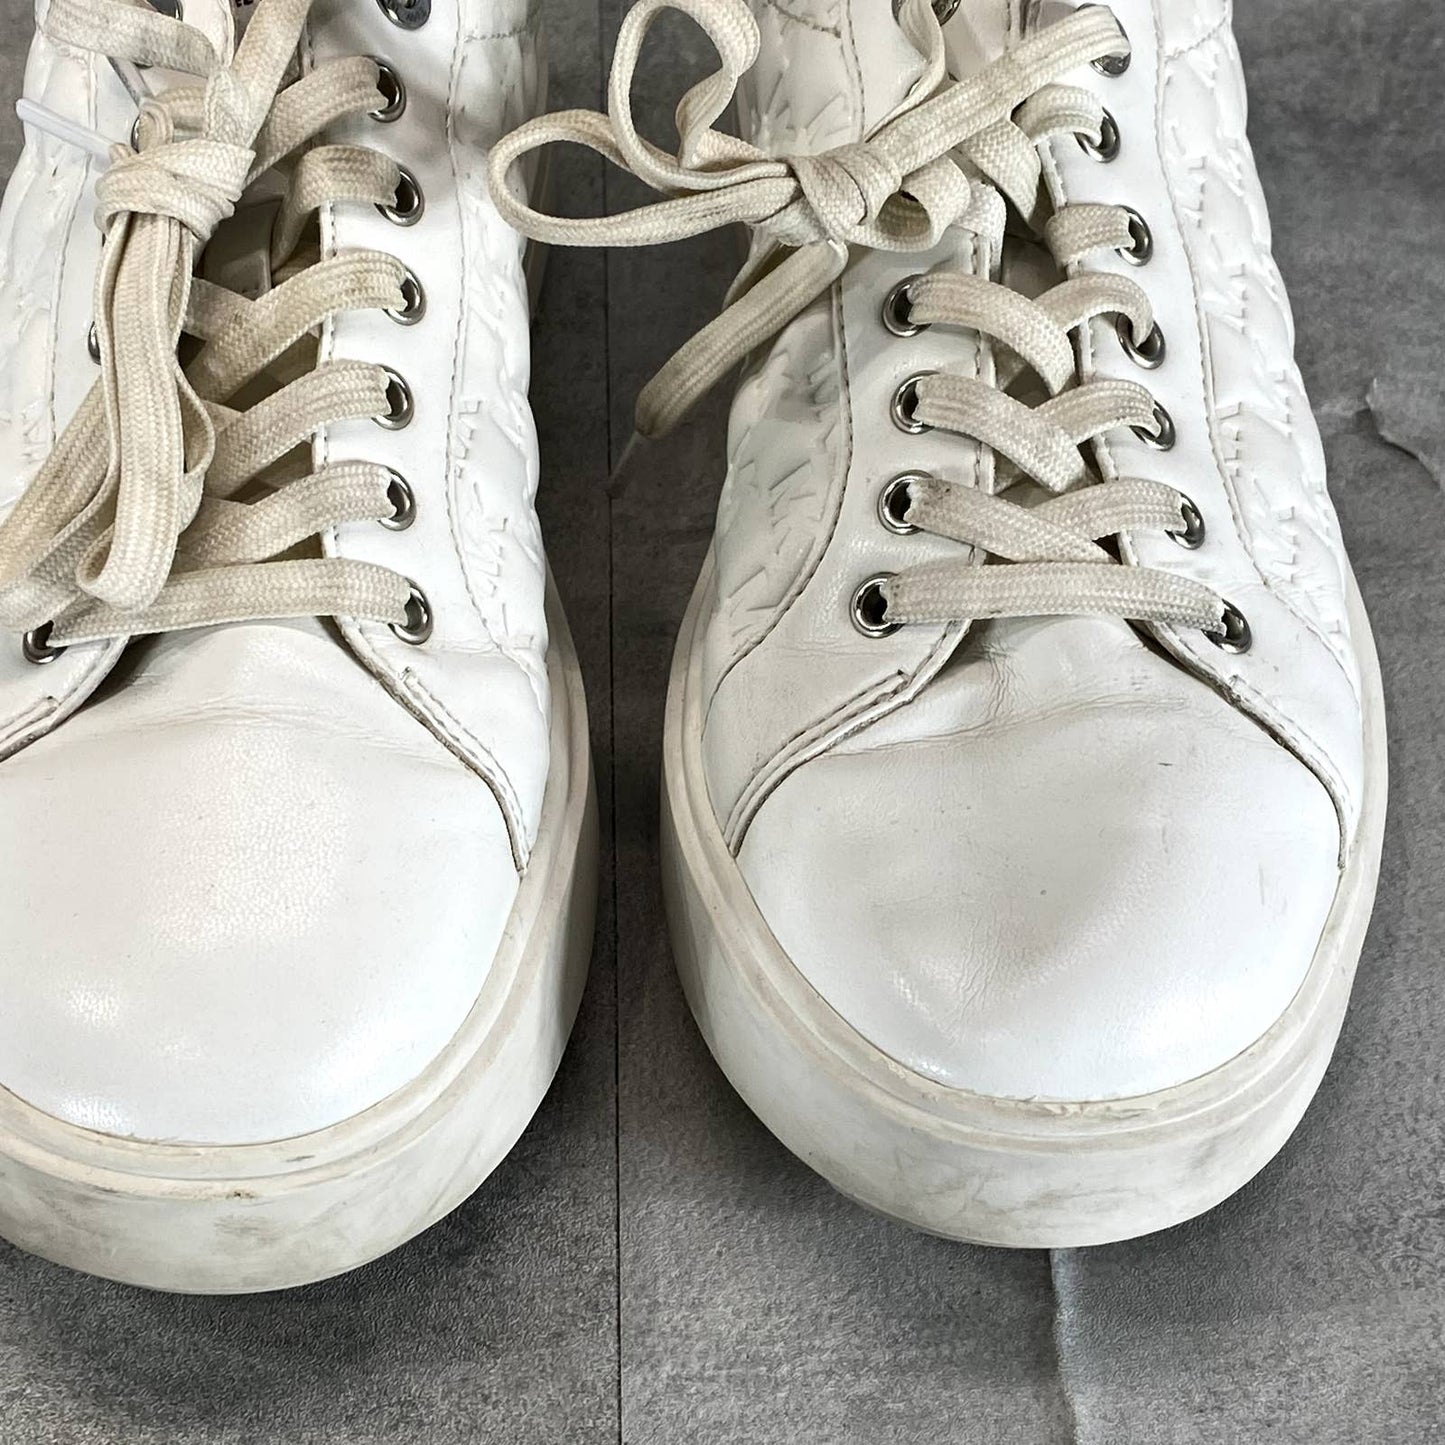 MICHAEL MICHAEL KORS Women's White Emmett Puffy Embossed Platform SneakersSZ 8.5